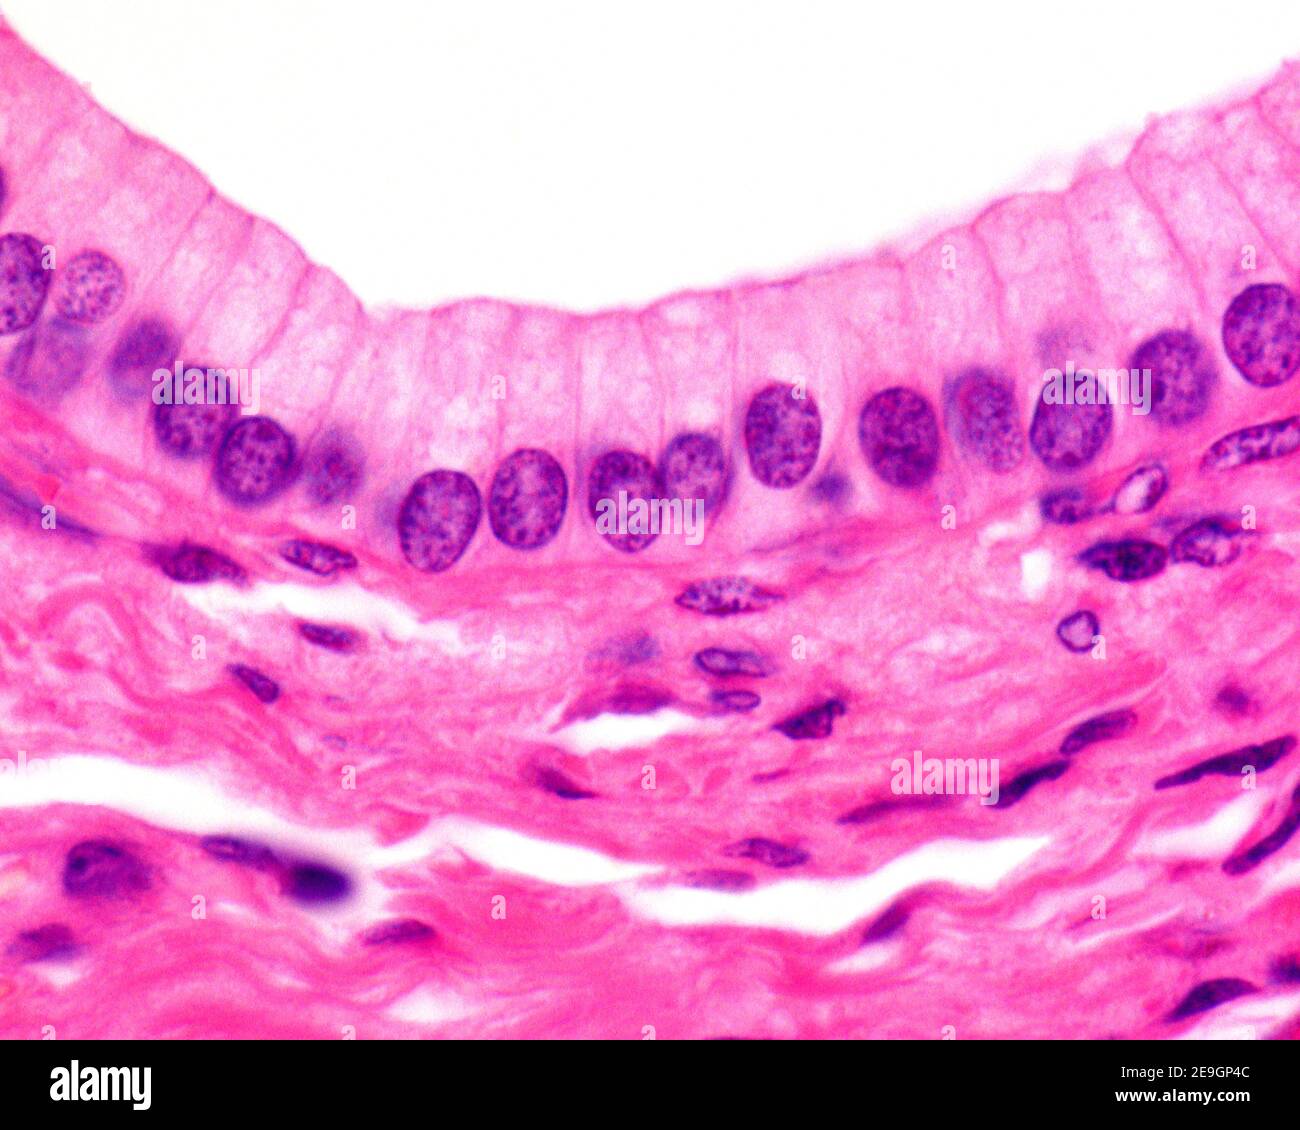 Epitelio colonnare semplice di un dotto escretorio del pancreas. Immagine al microscopio luminoso. Foto Stock